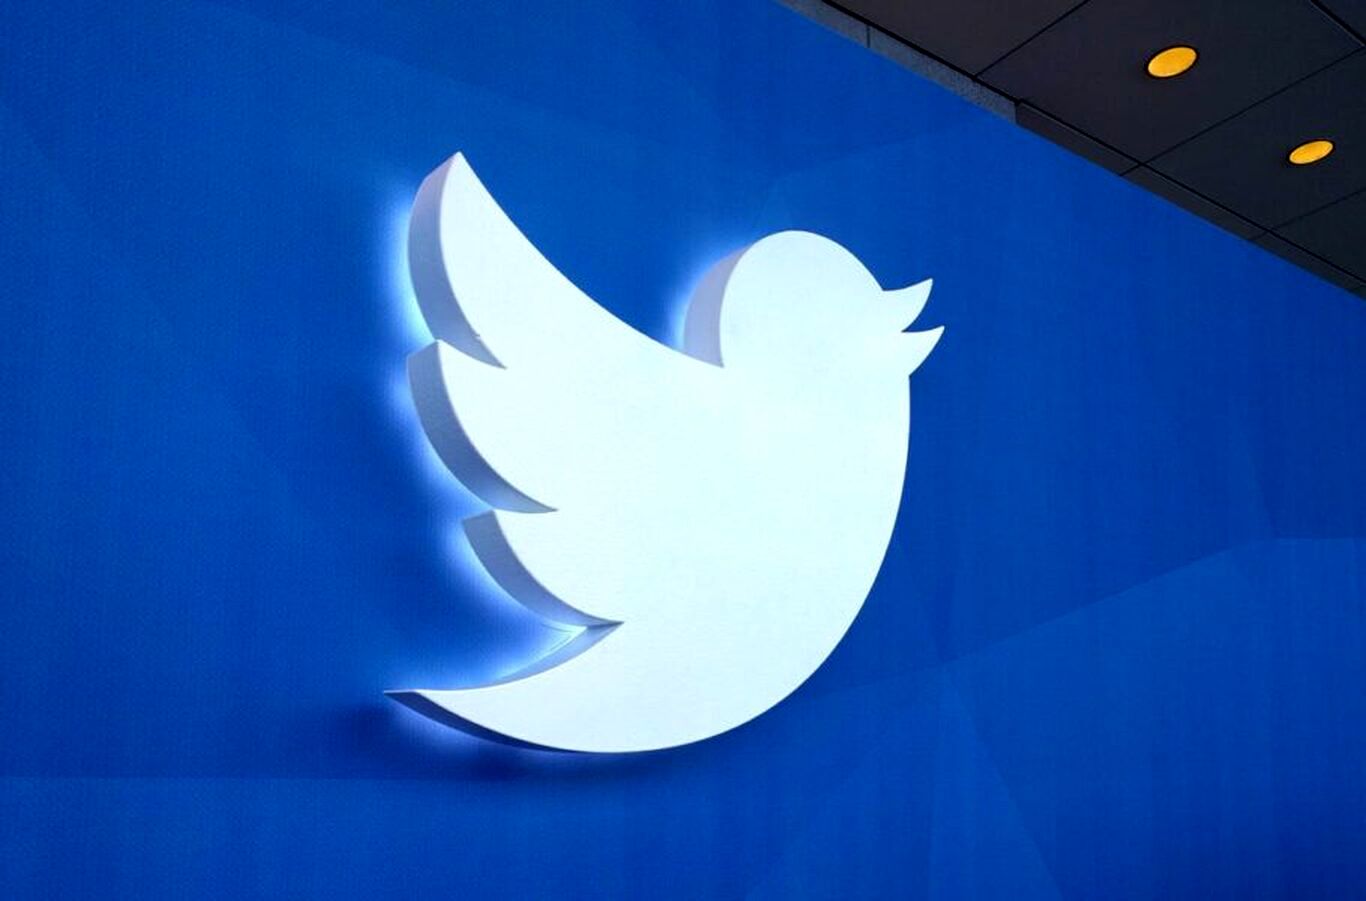 توییتر وعده داد که کمتر حساب‌های کاربری ناقض قوانین را مسدود کند